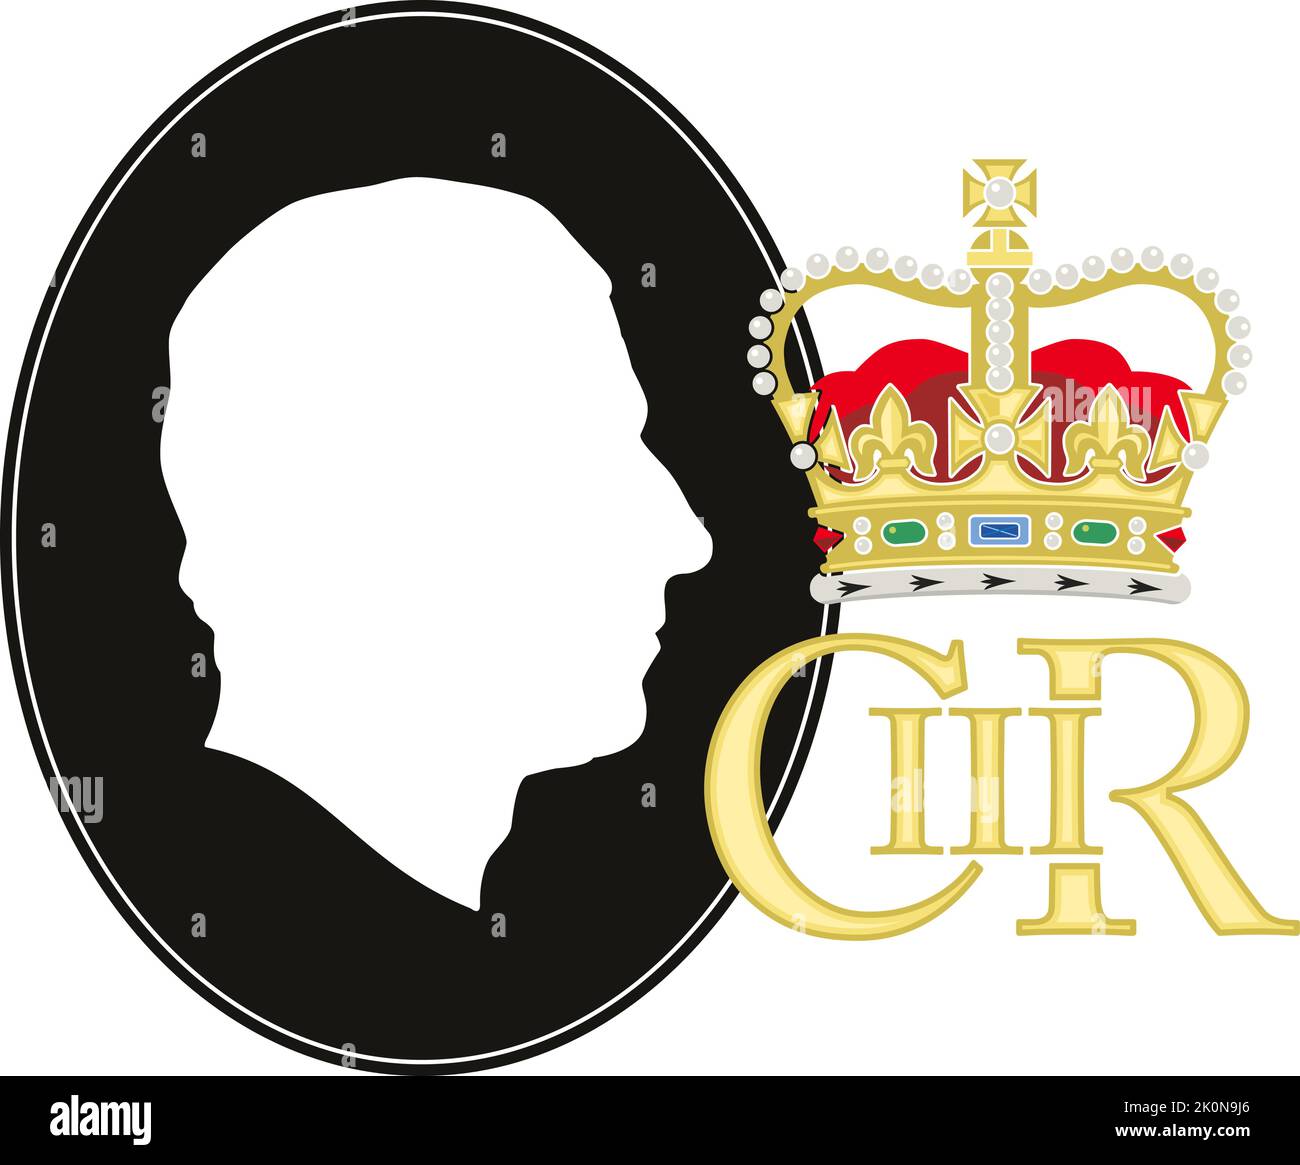 Charles III Roi du Royaume-Uni, couronnement 2022, silhouette de portrait et monogramme, illustration vectorielle Illustration de Vecteur